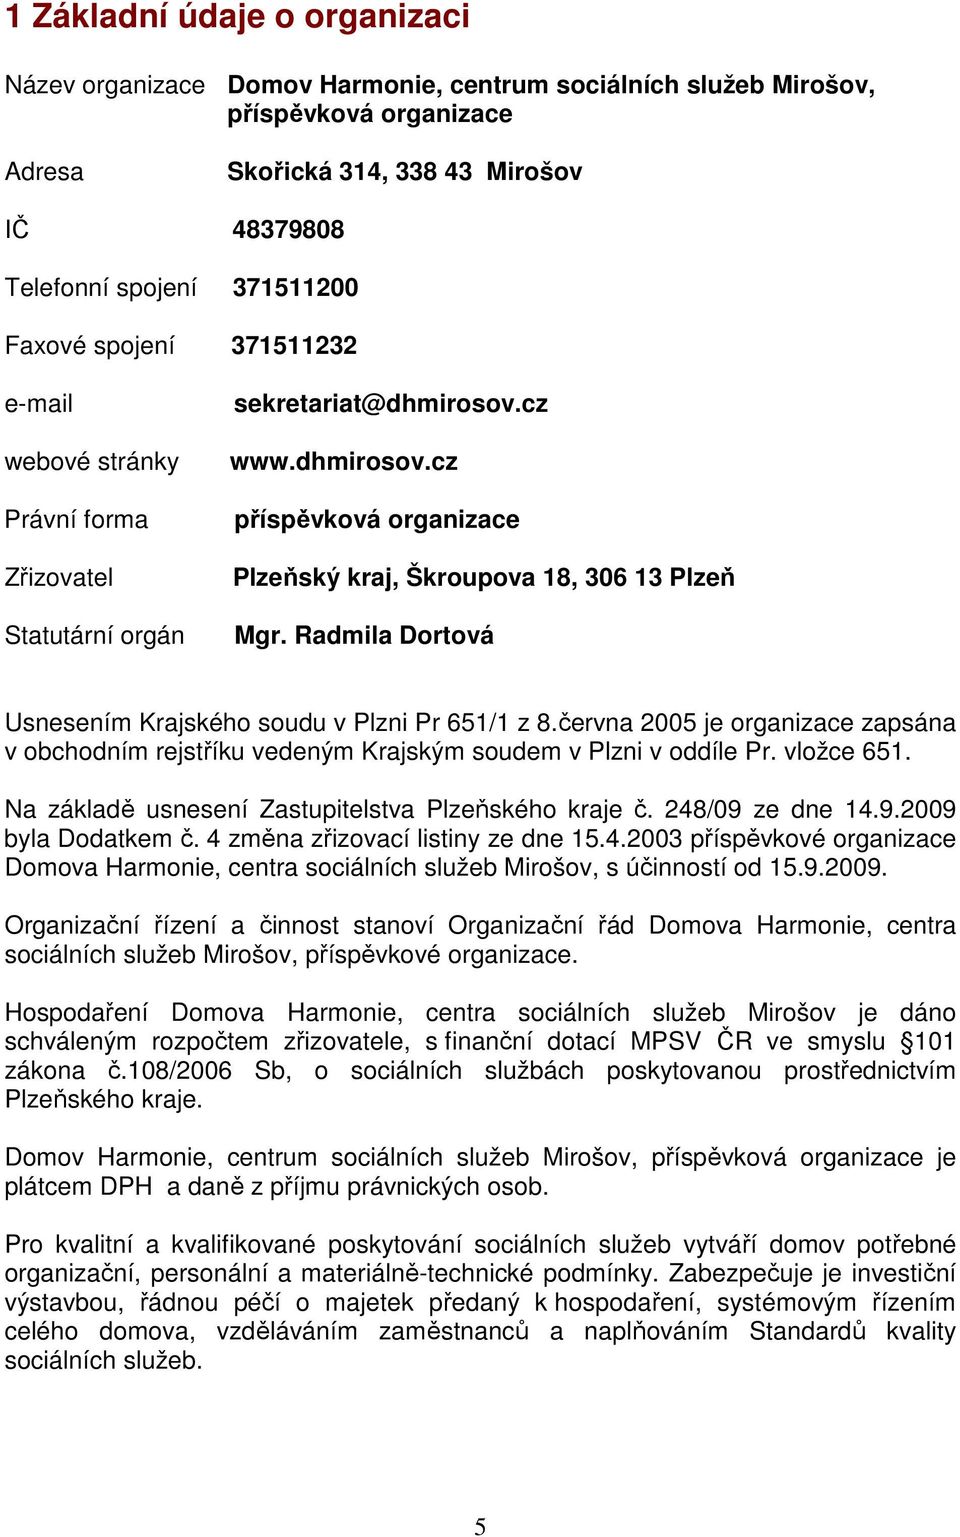 Radmila Dortová Usnesením Krajského soudu v Plzni Pr 651/1 z 8.června 2005 je organizace zapsána v obchodním rejstříku vedeným Krajským soudem v Plzni v oddíle Pr. vložce 651.